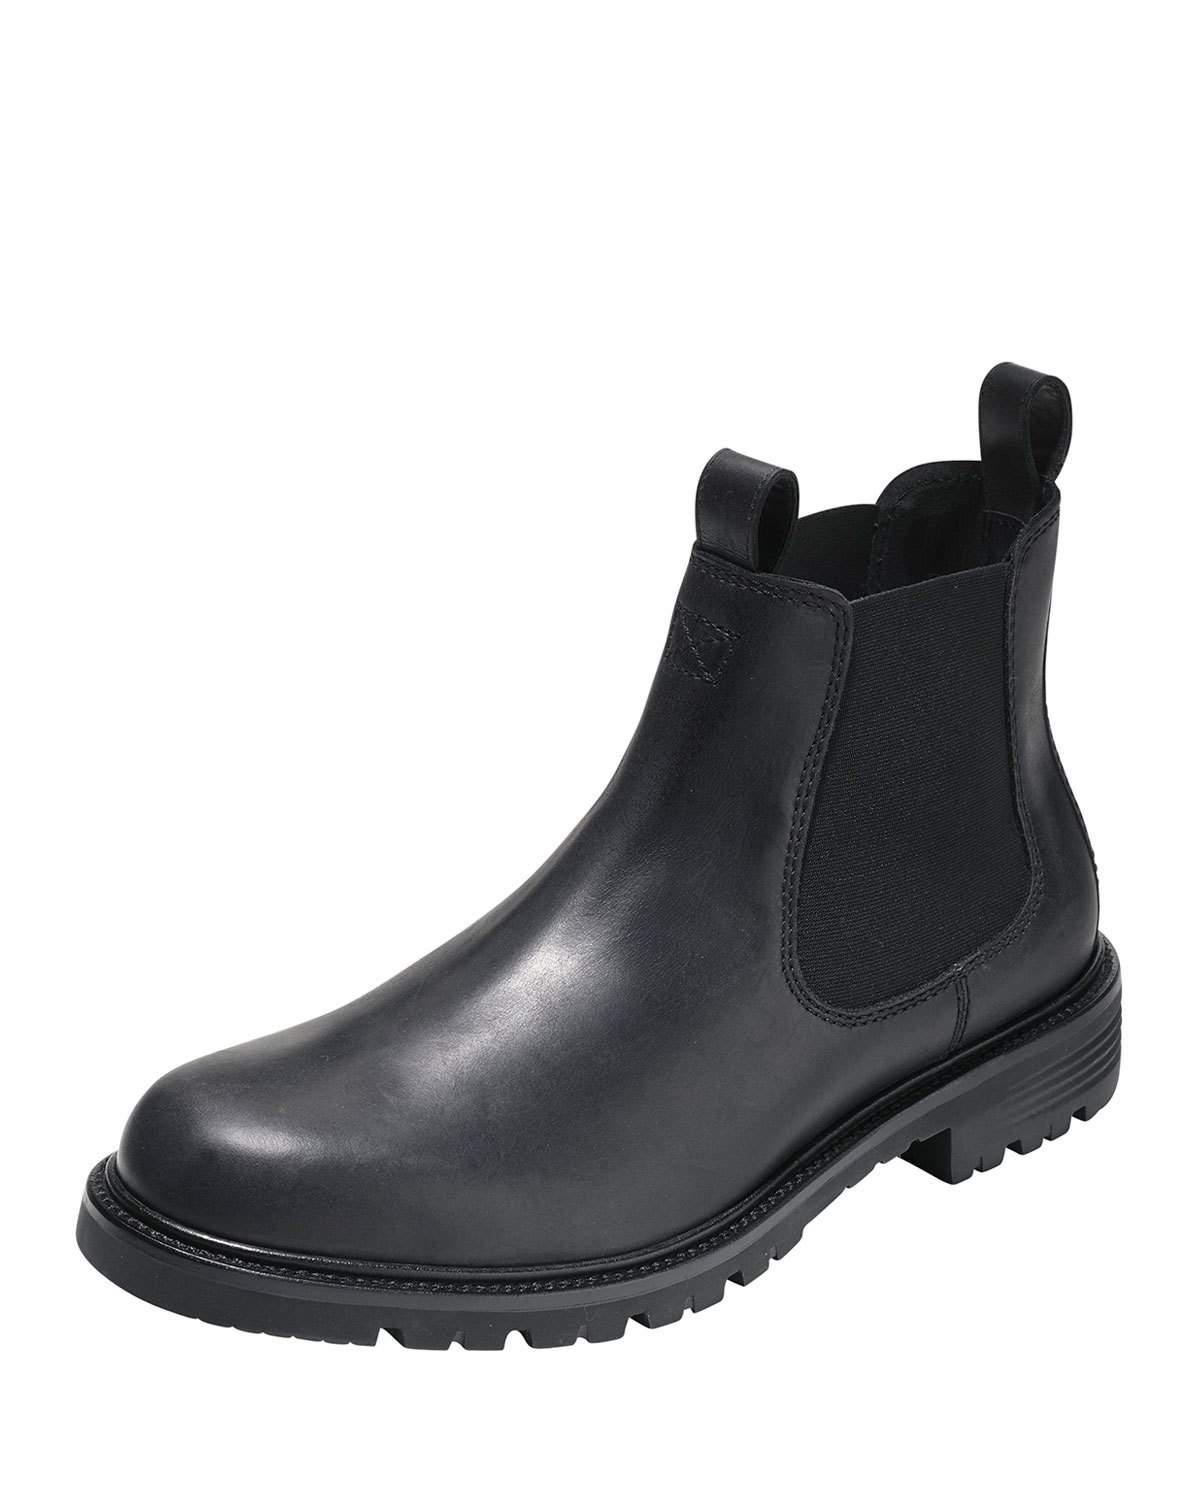 Lyst - Cole Haan Grantland Waterproof Chelsea Boot in Black for Men